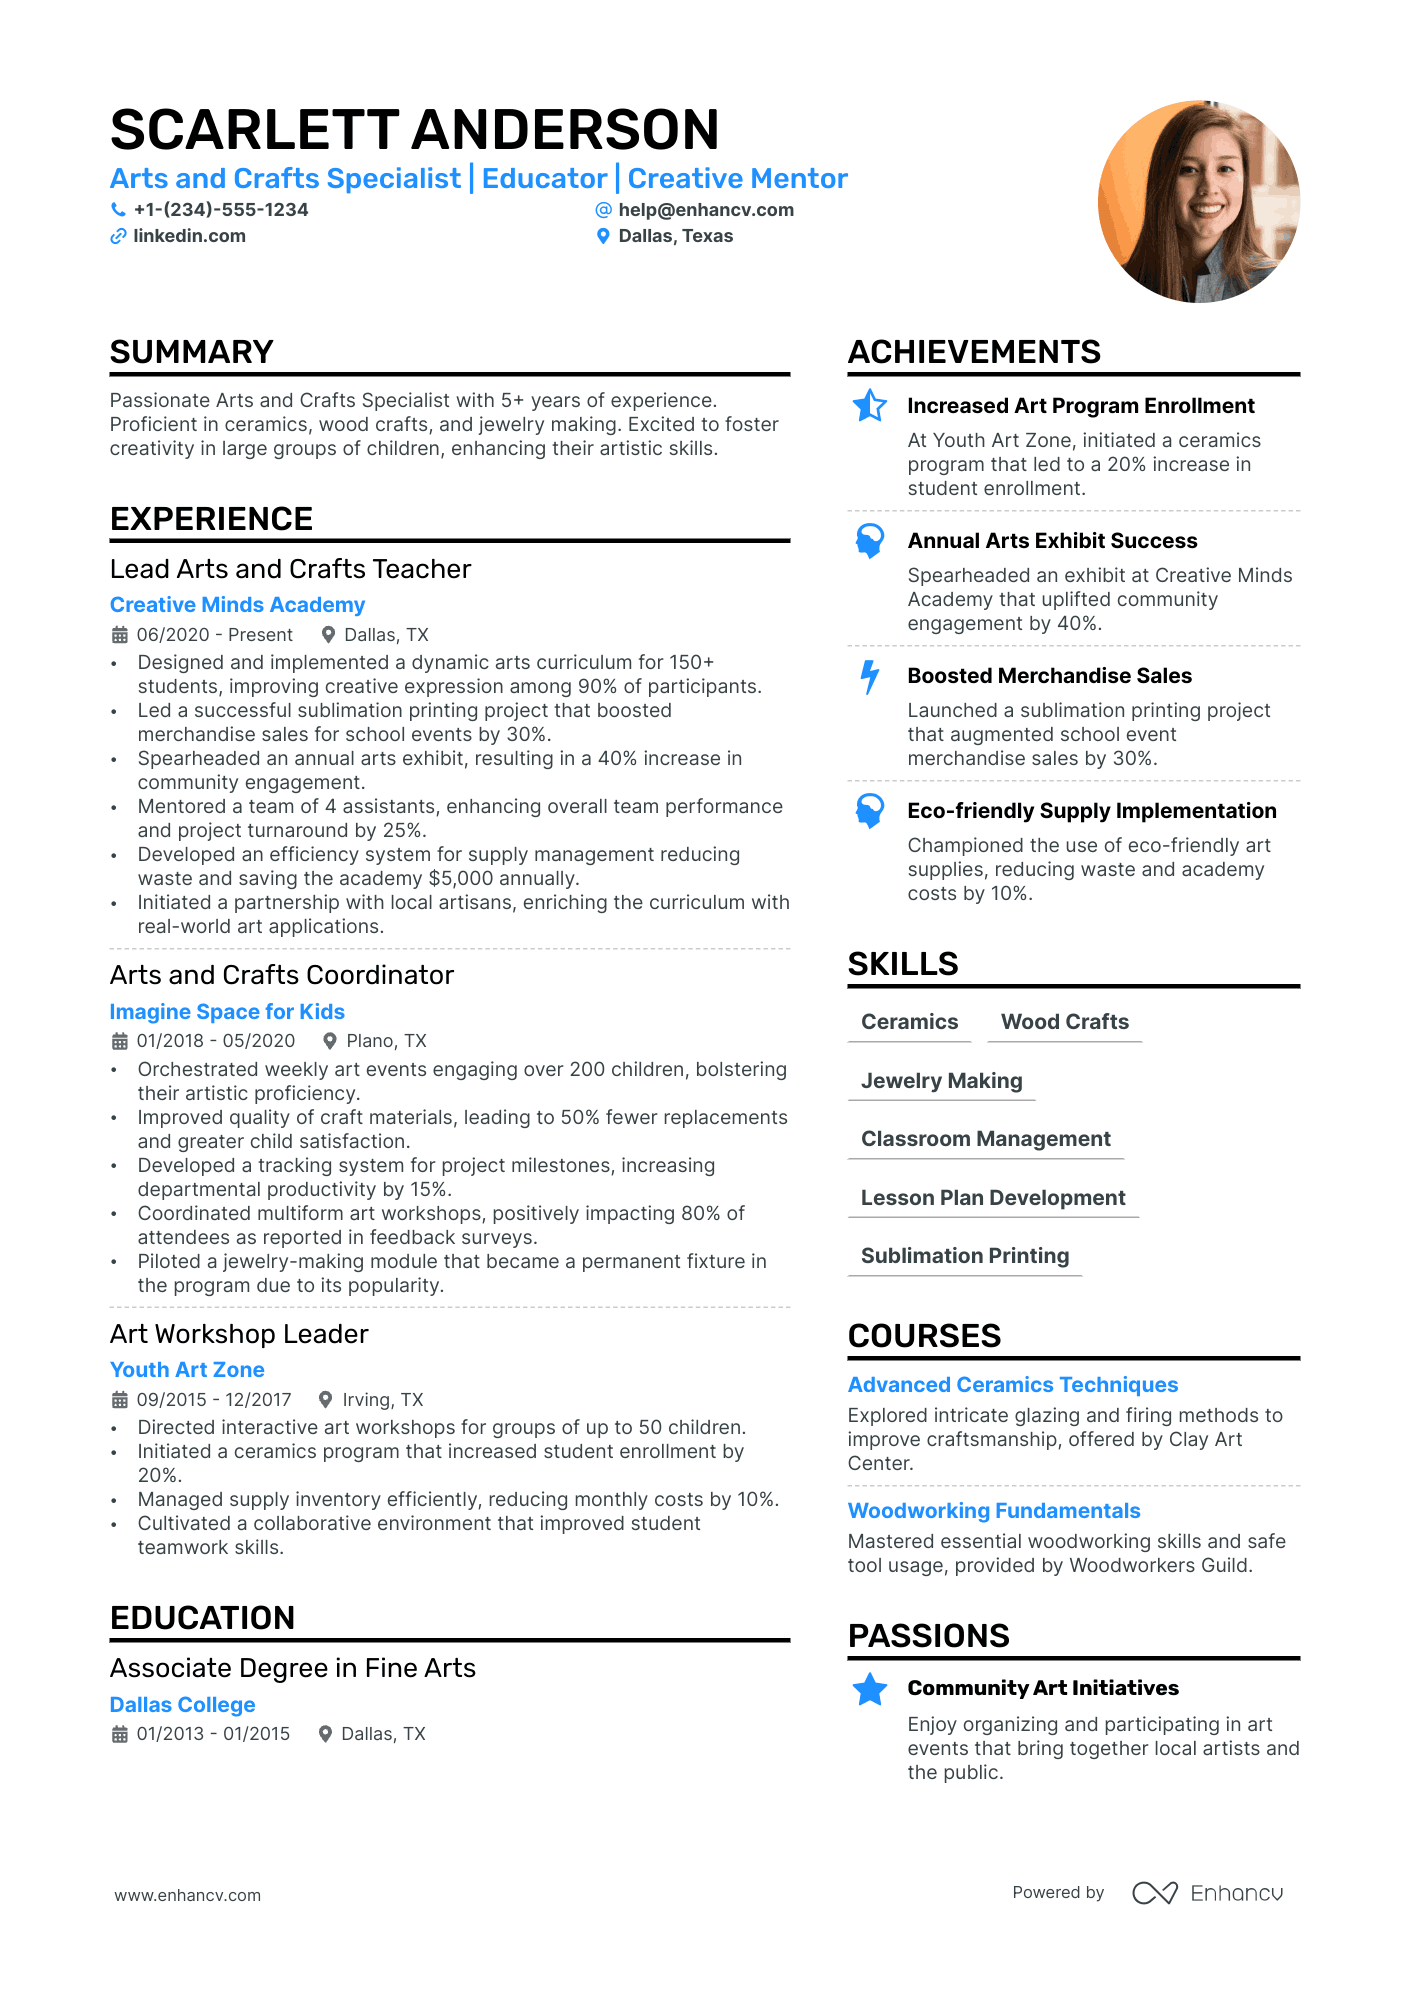 resume for fresher teacher format